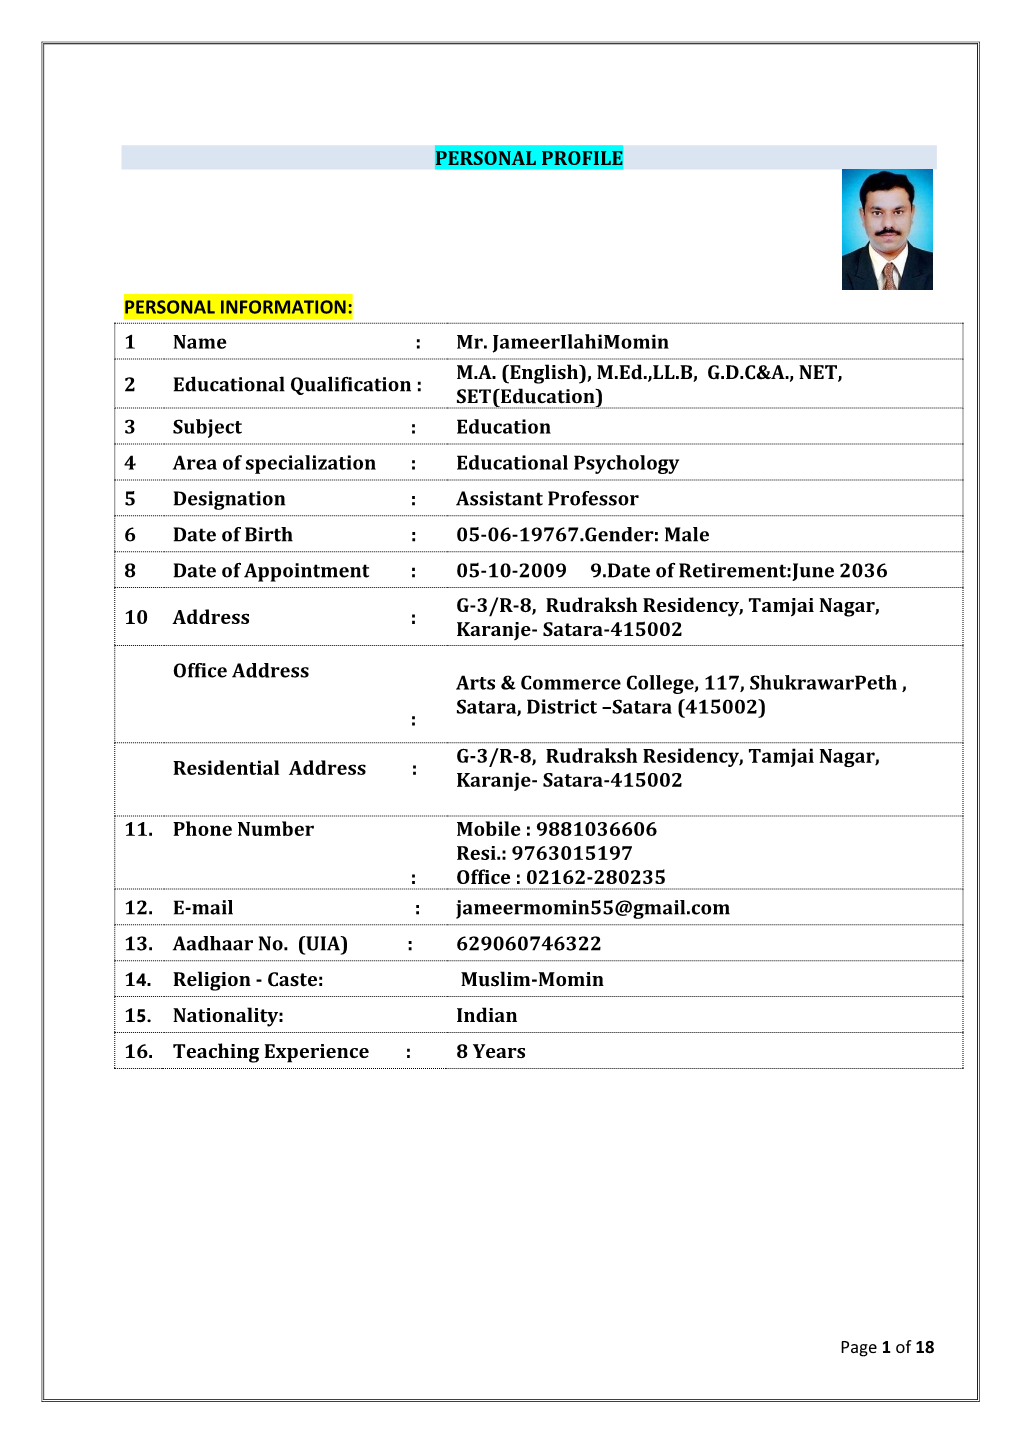 Mr. Jameerilahimomin 2 Educational Qualification : MA (English)